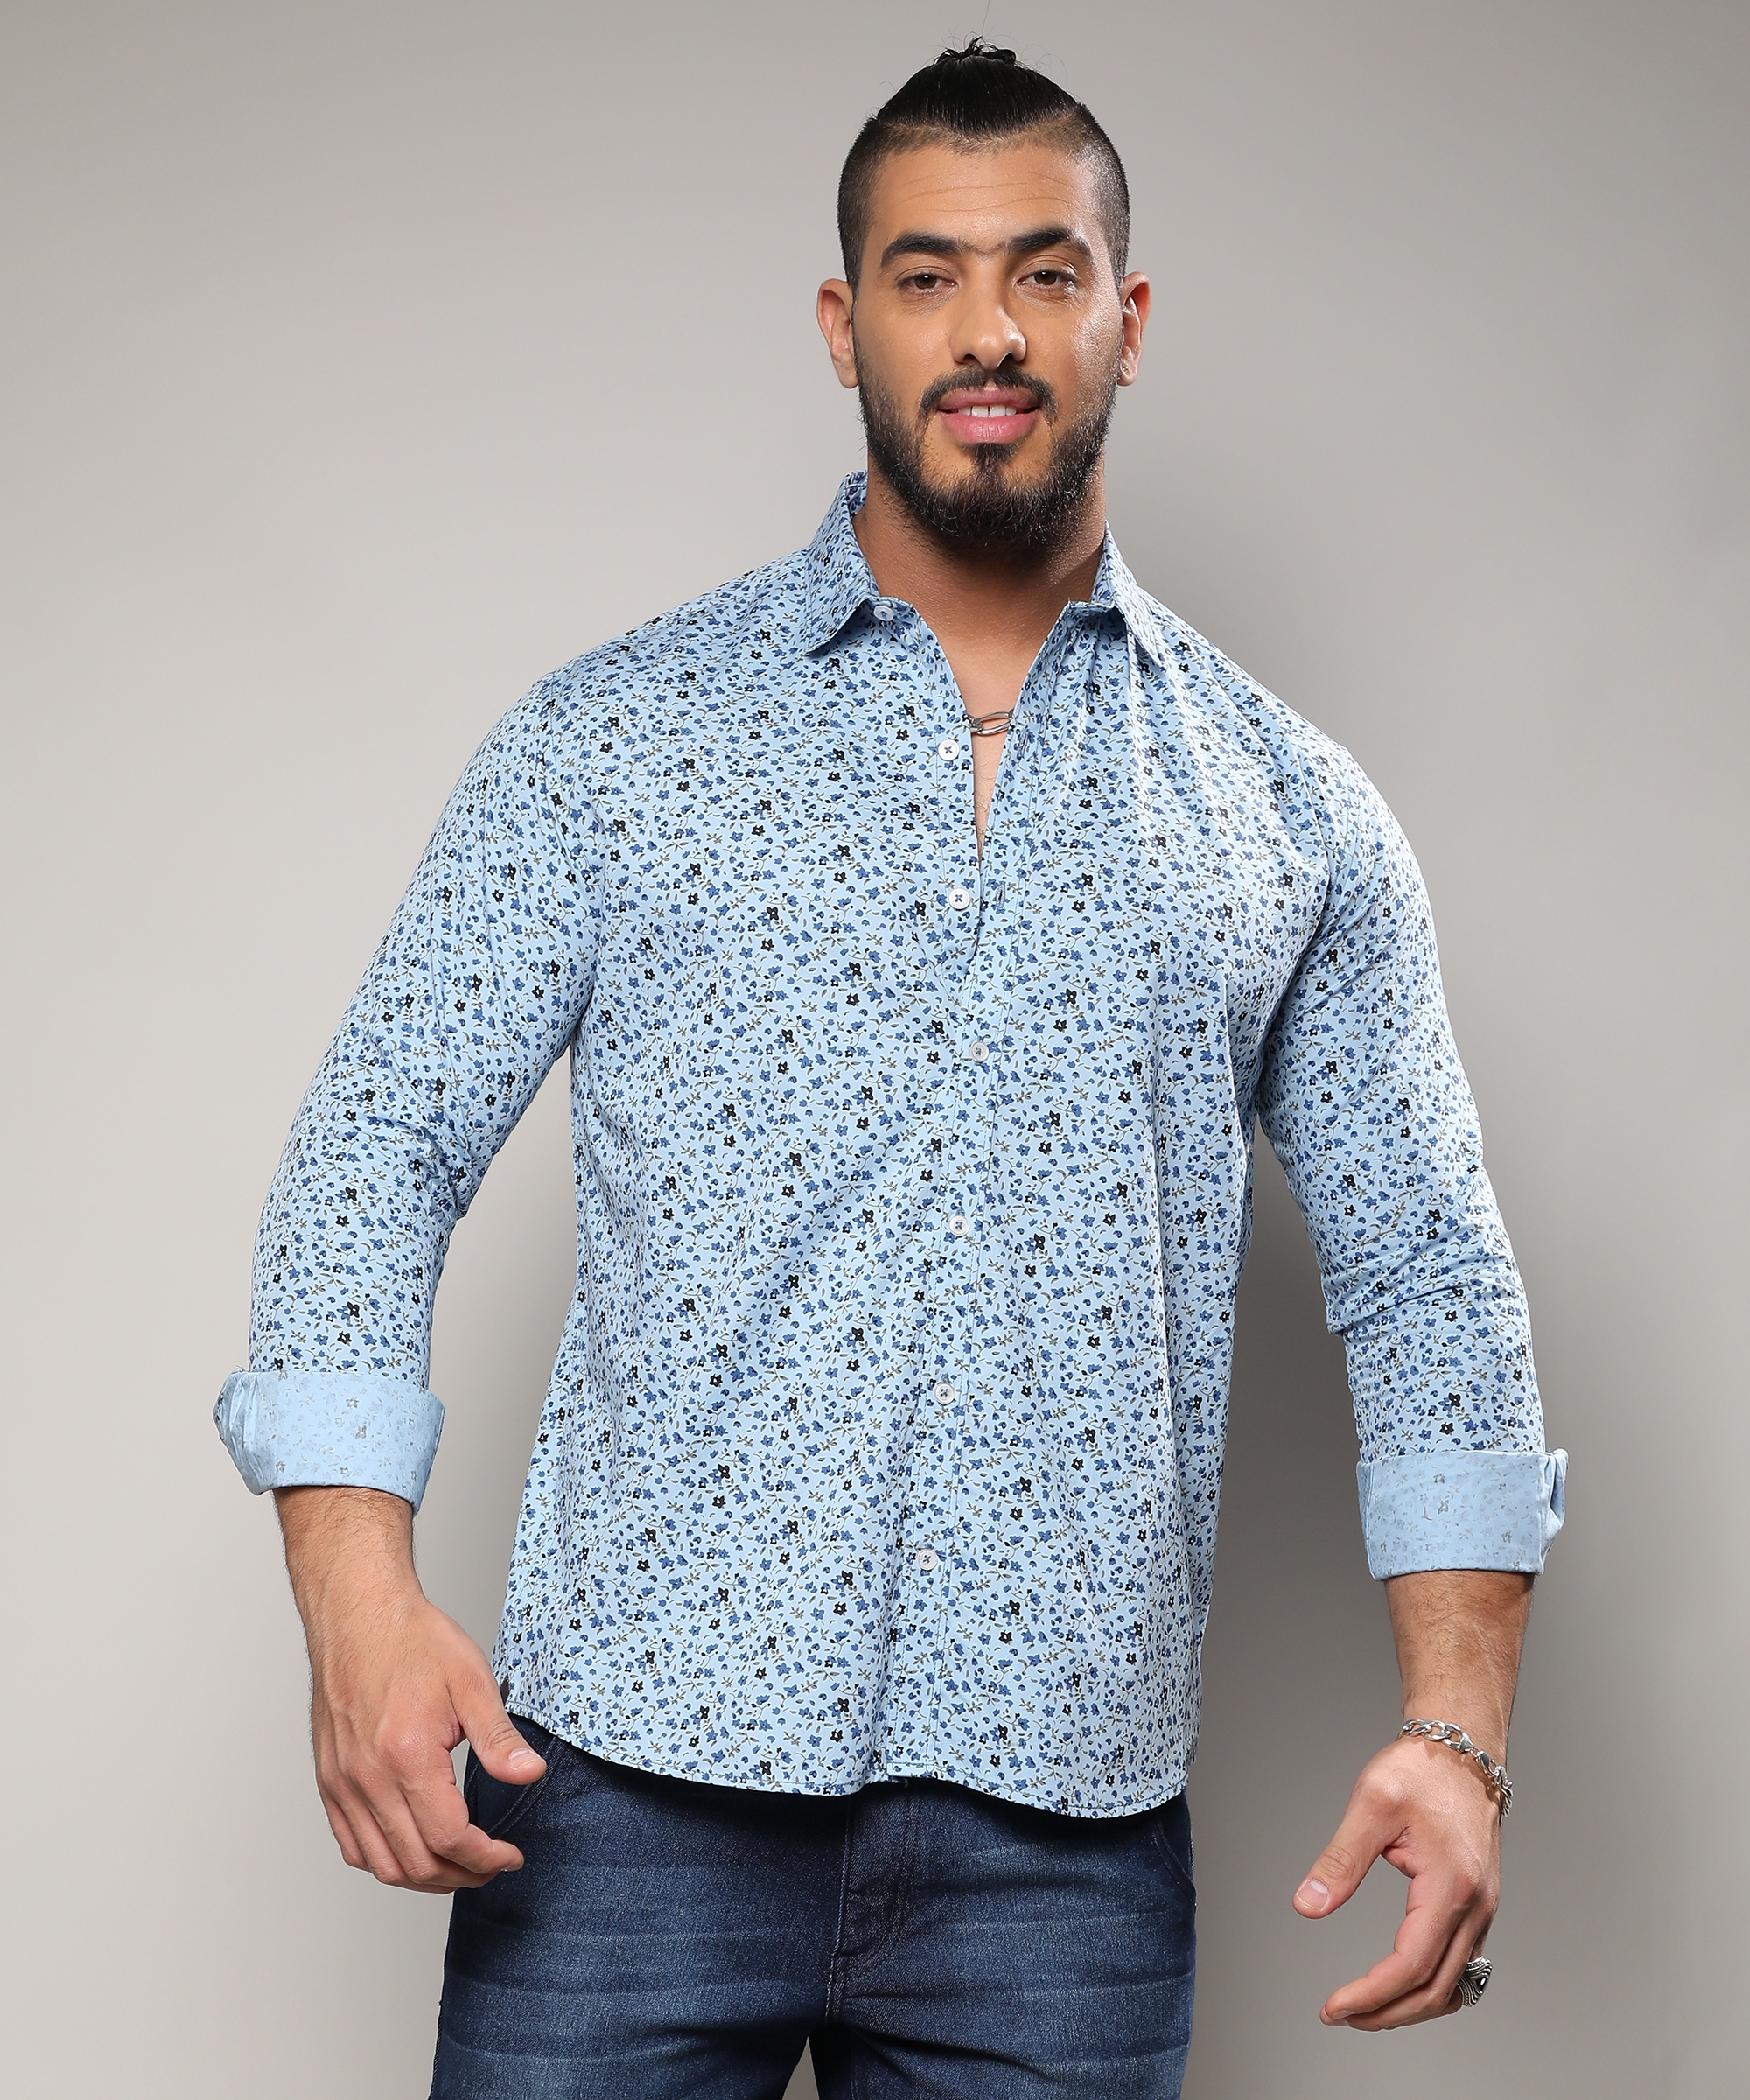 Instafab Plus | Men's Blue Micro Floral Shirt